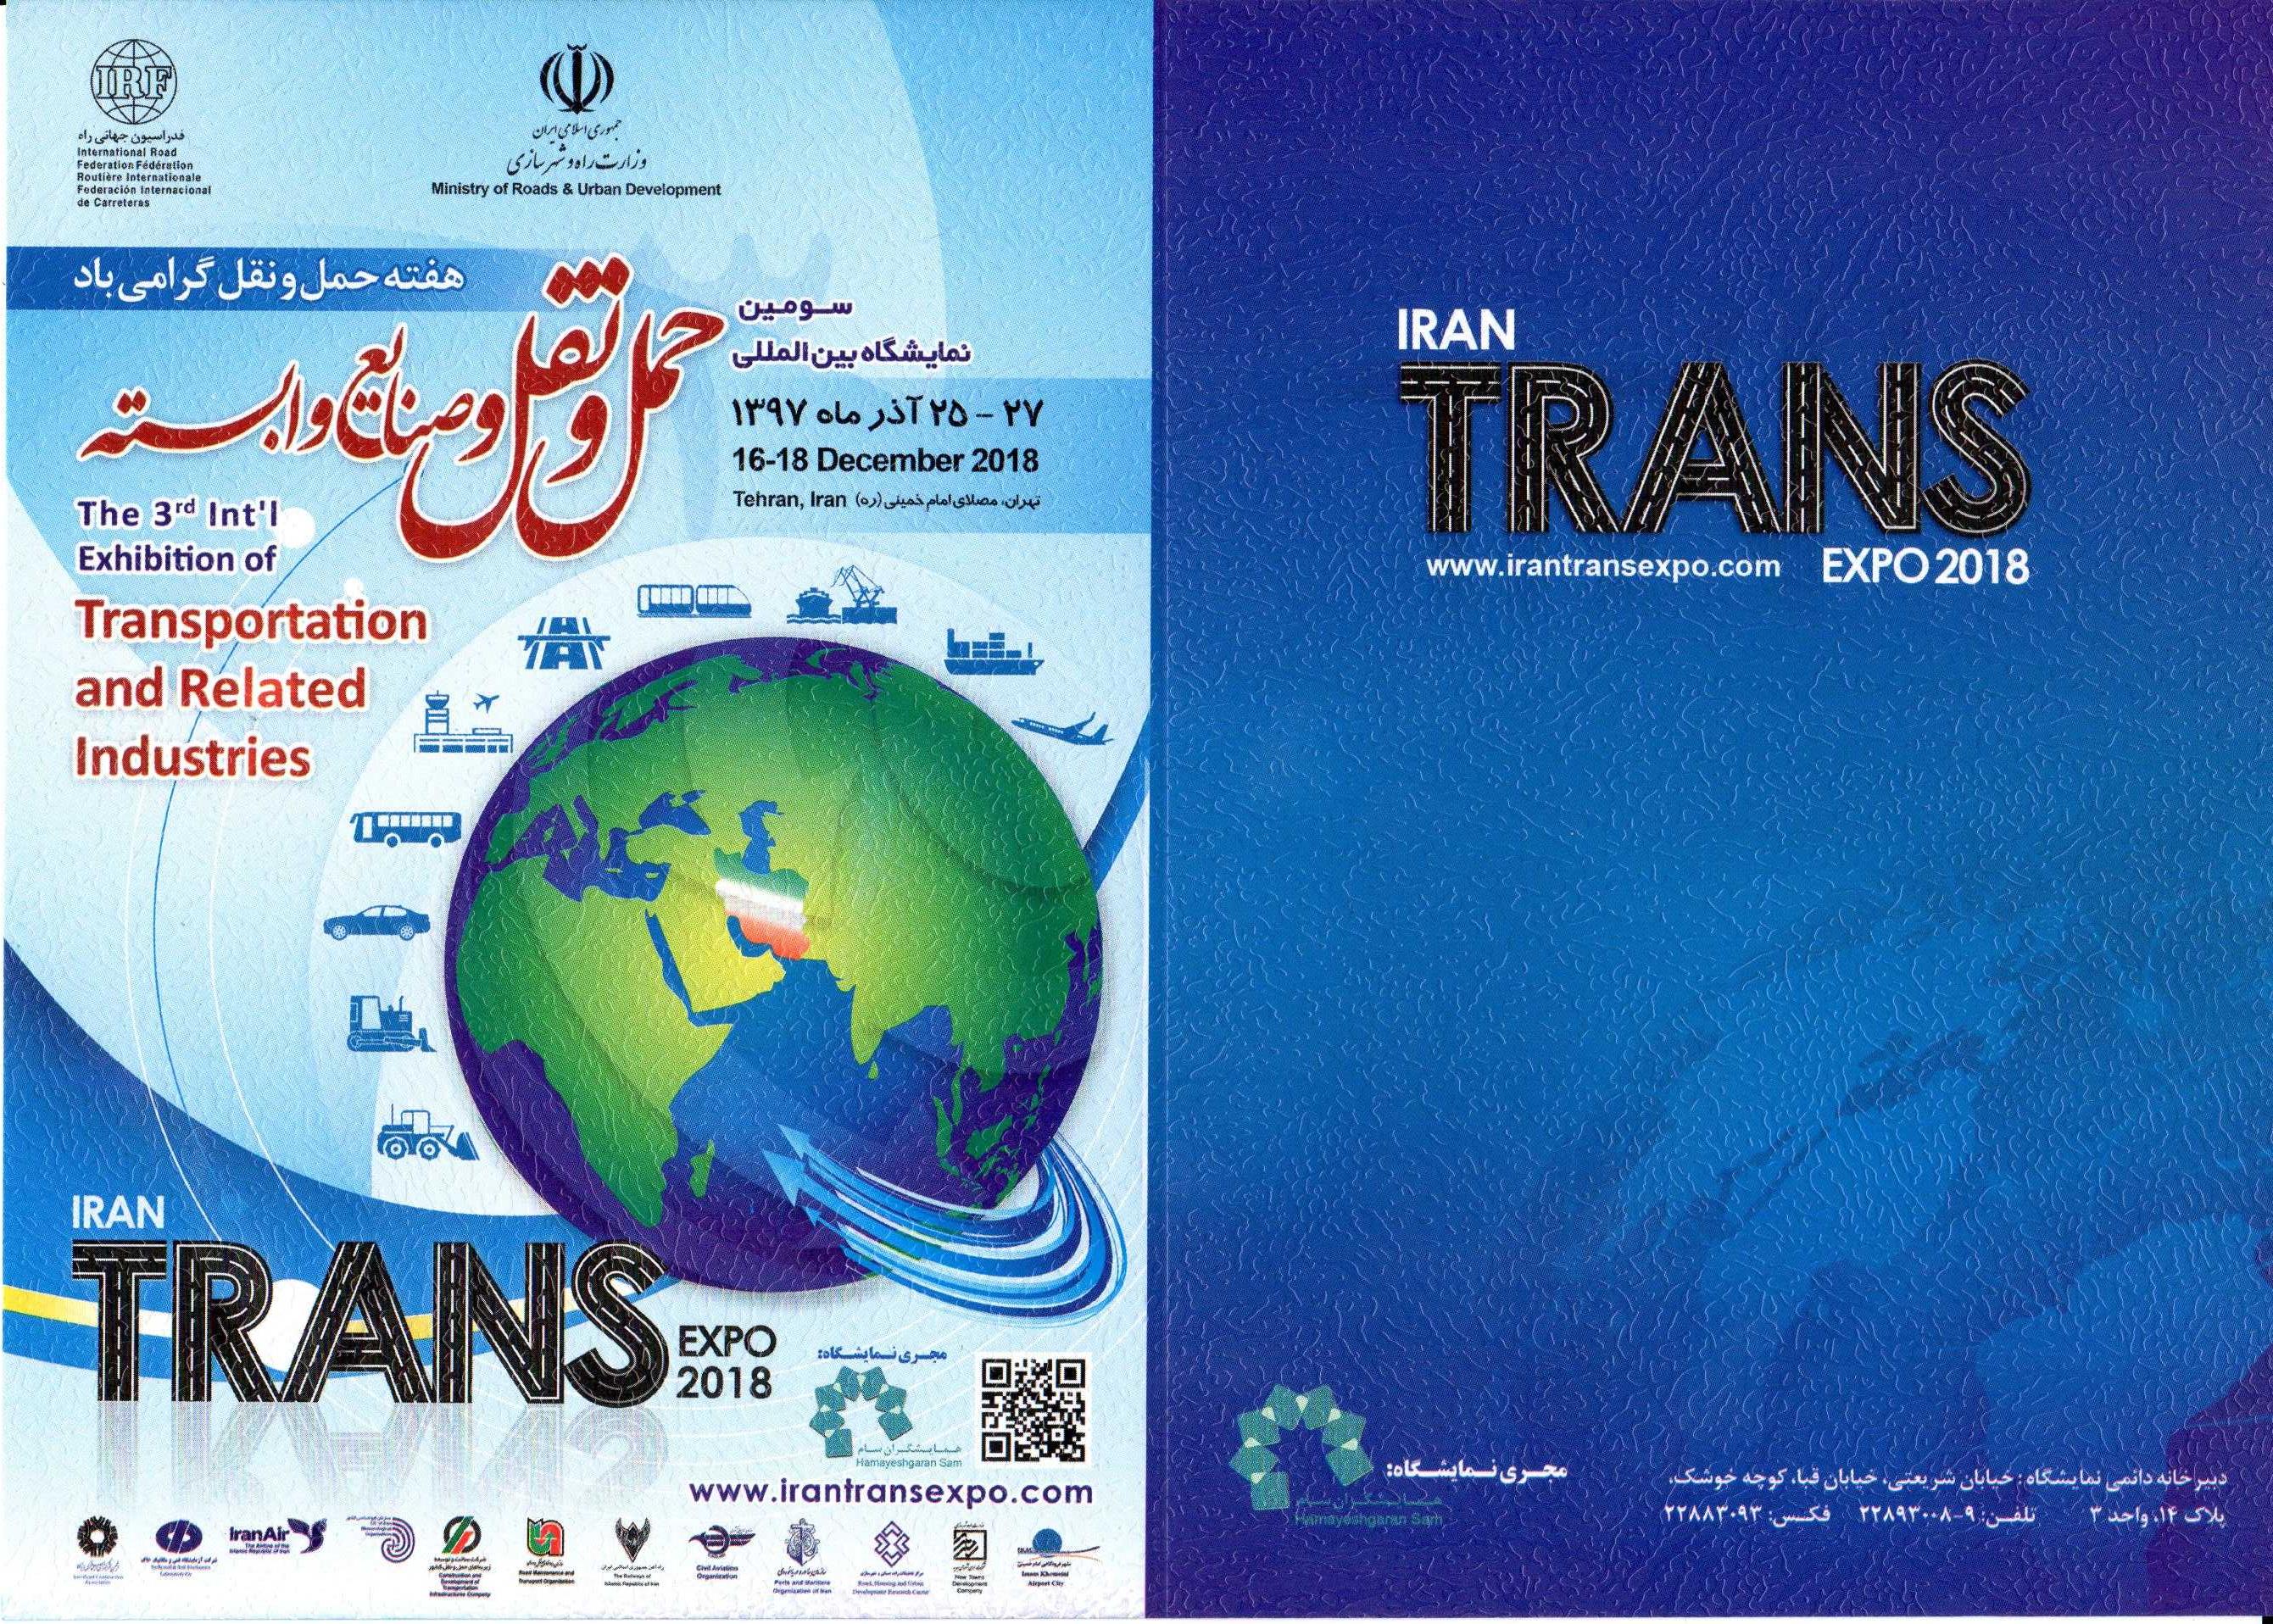 IRAN TRANS EXPO 2018